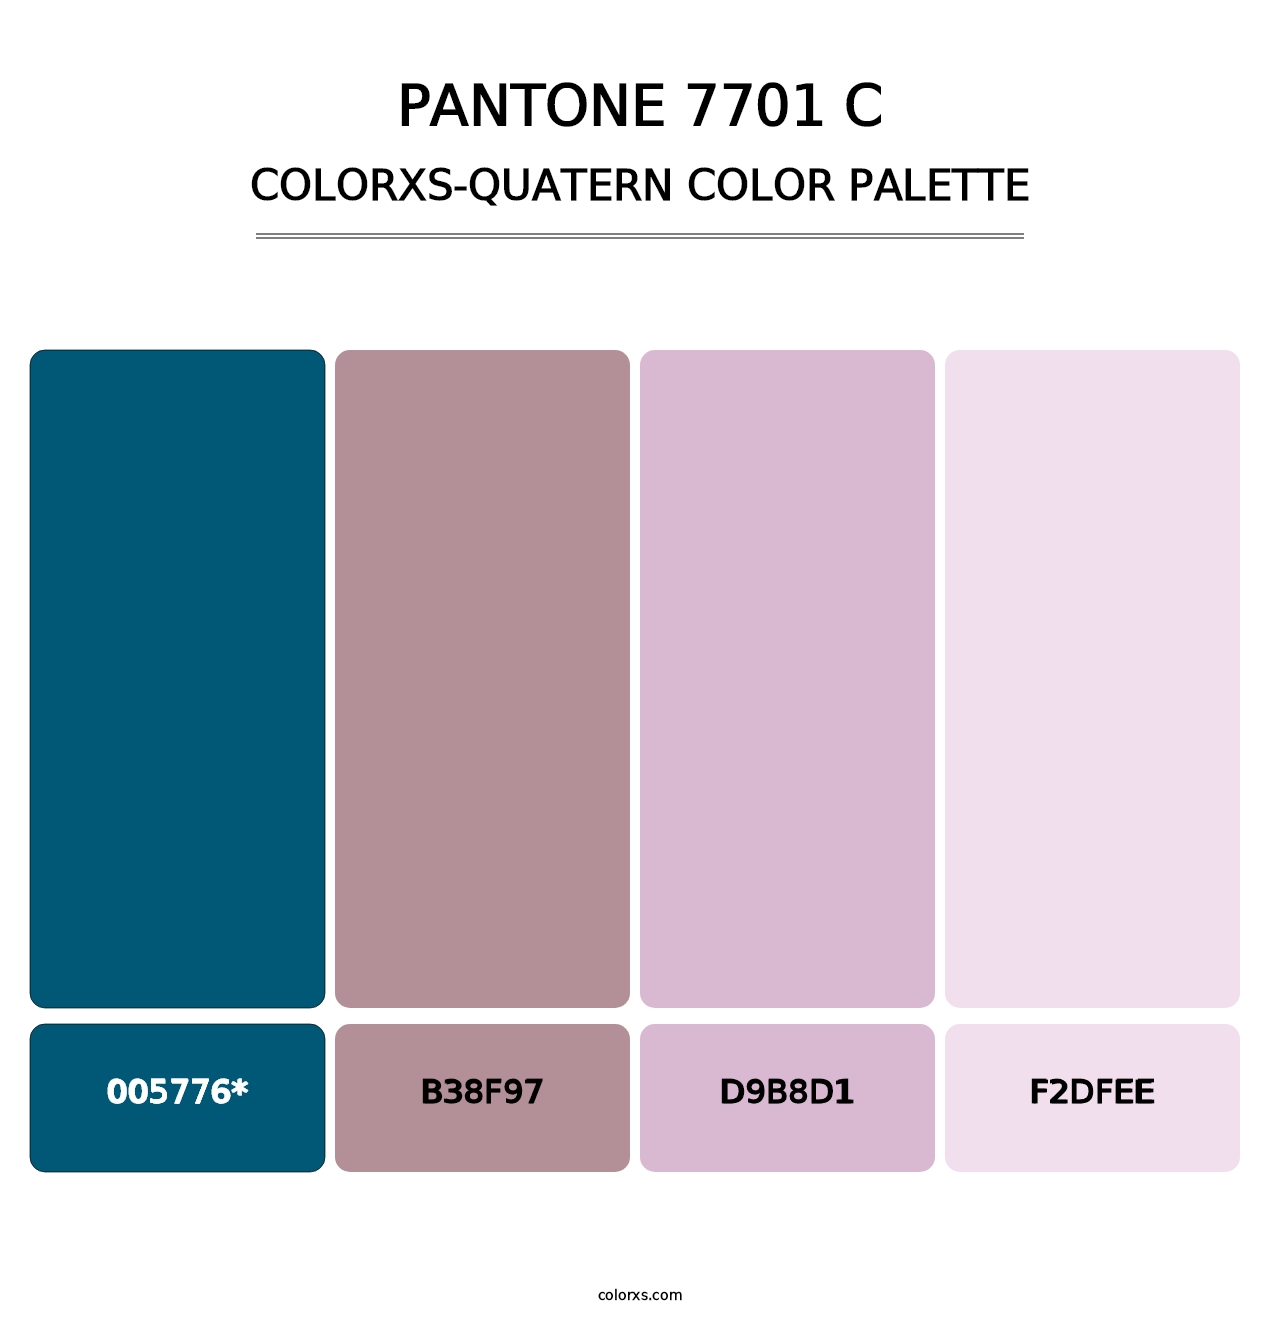 PANTONE 7701 C - Colorxs Quad Palette